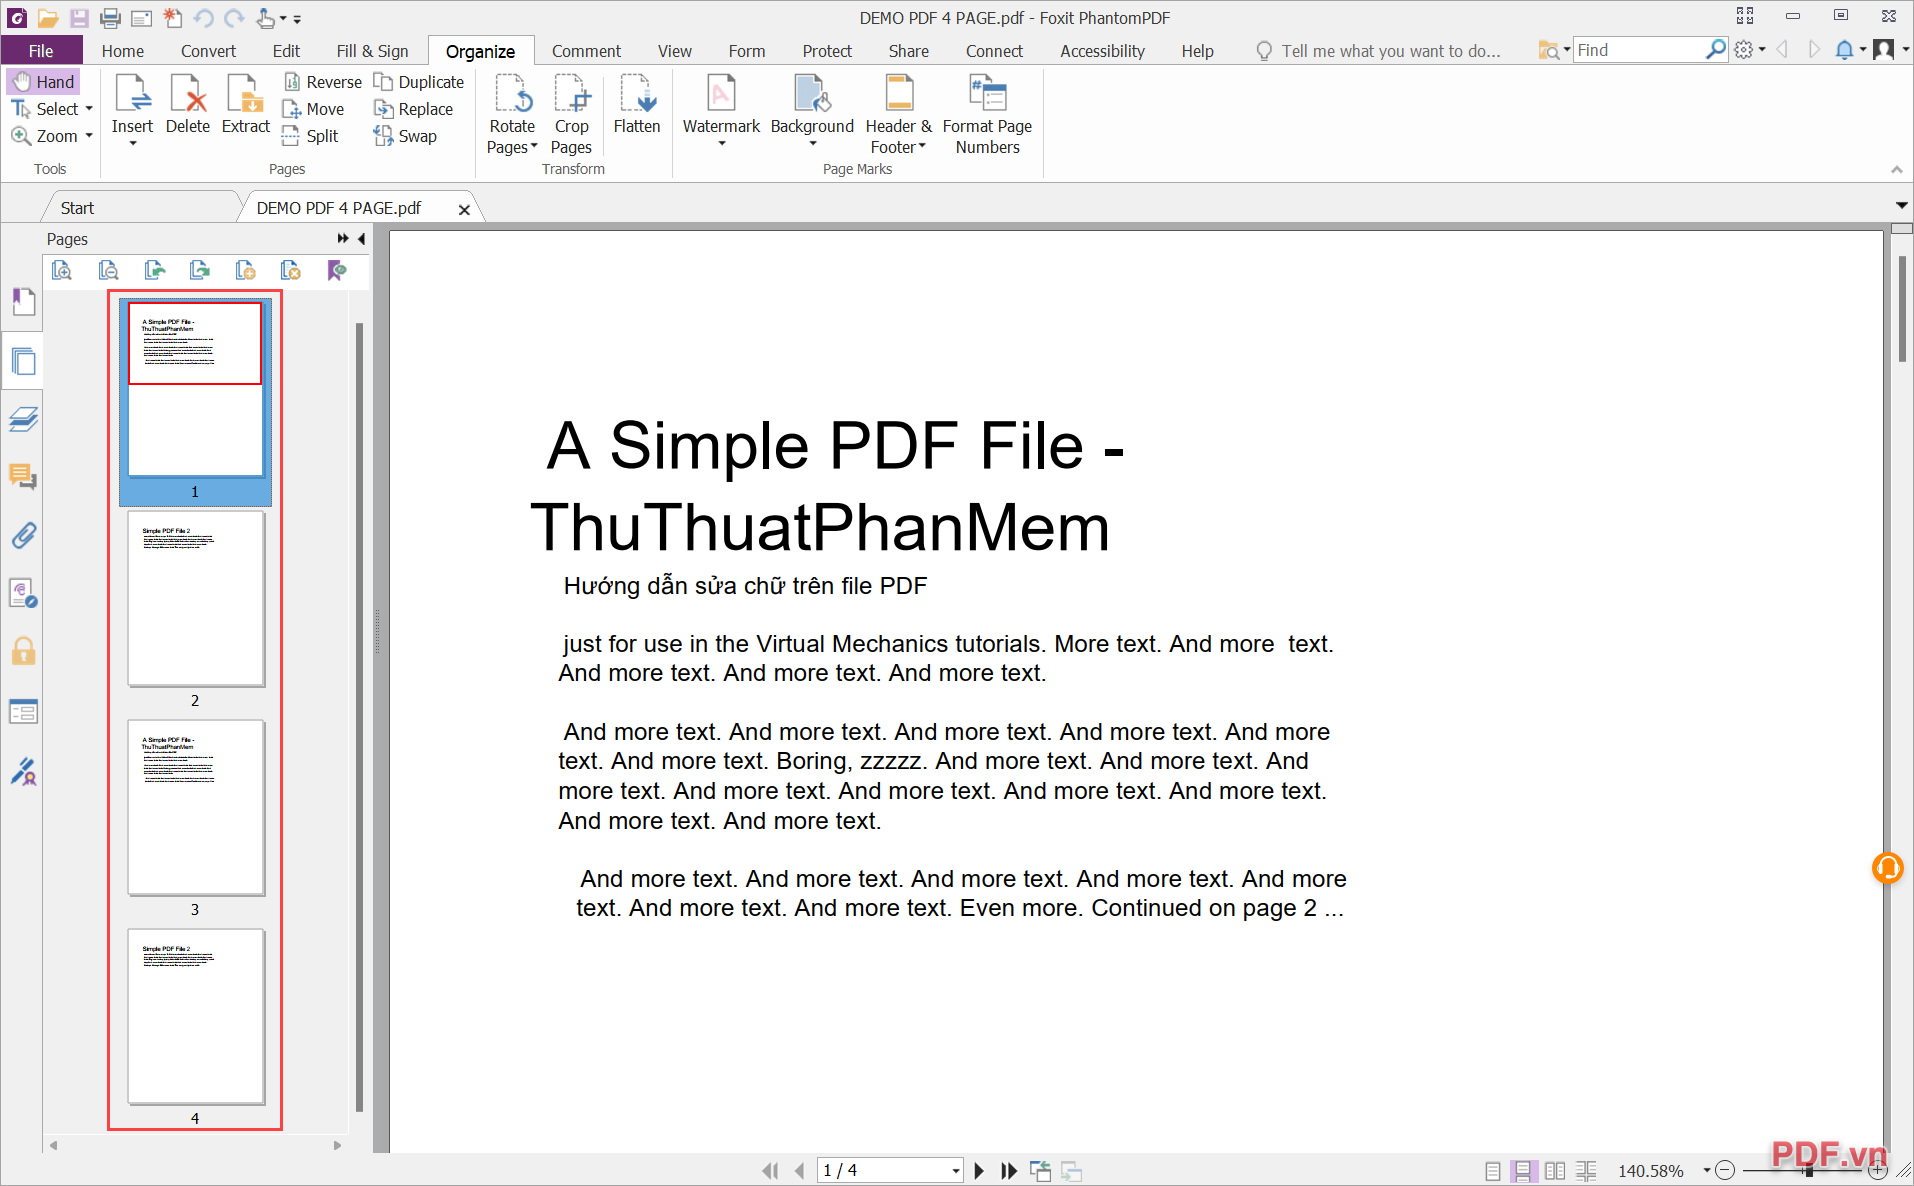 Quản lý trang của Foxit Phantom PDF